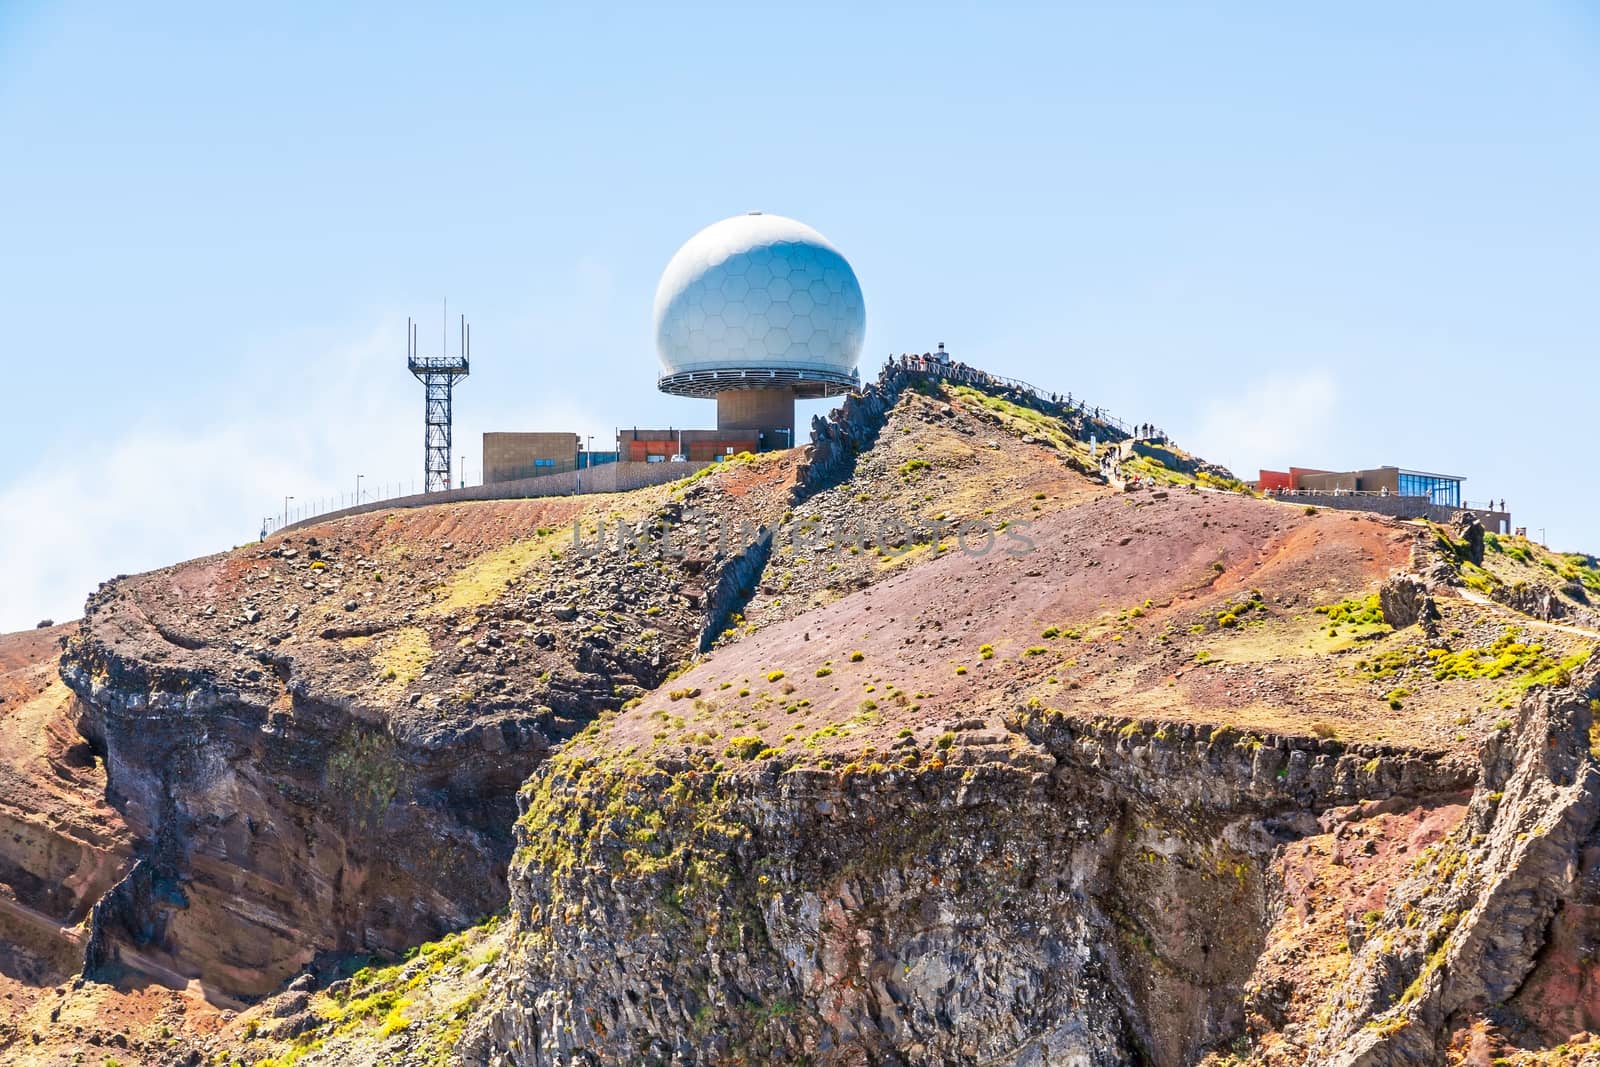 Madeira, Portugal - June 6, 2013: Pico do Arieiro, the 3rd highest mountain of Madeira, Portugal with impressive radar station globe.